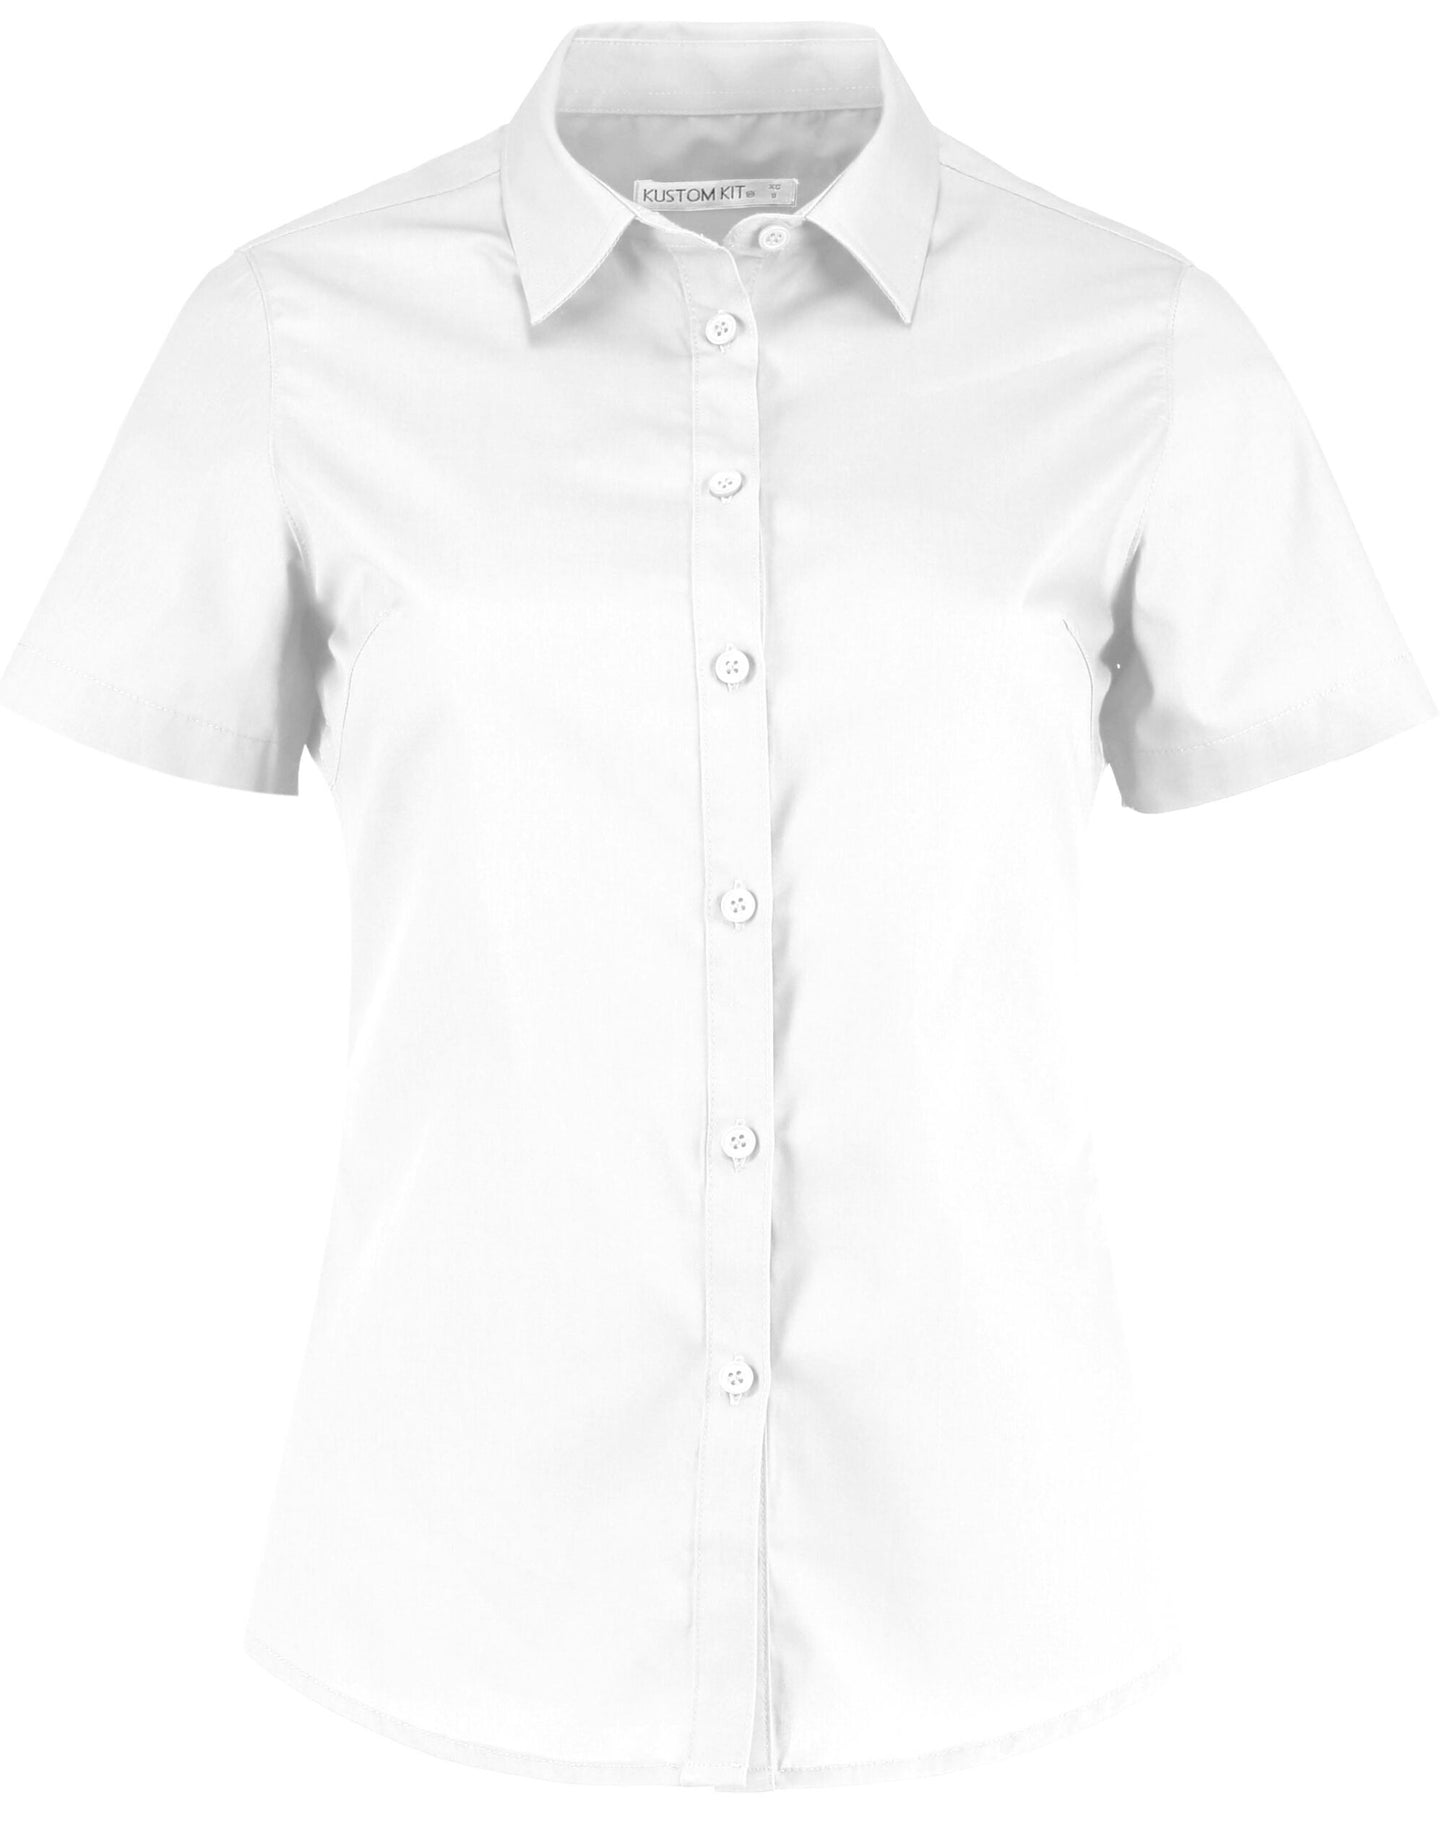 KK241 Kustom Kit Ladies Short Sleeve Poplin Shirt